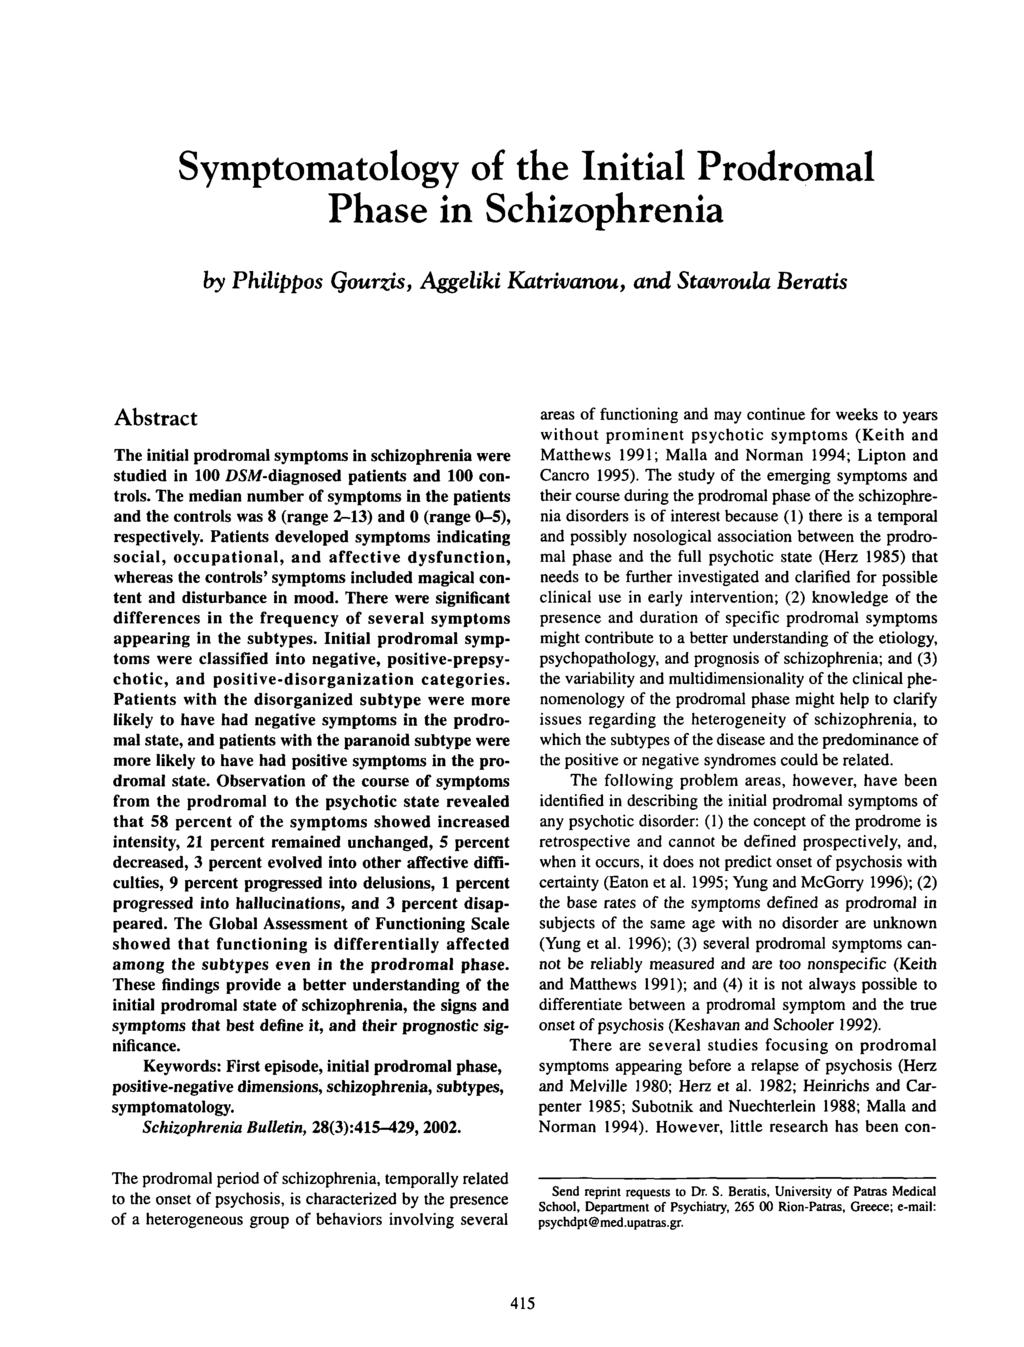 Symptomatology of the Initial Prodromal Phase in Schizophrenia by Philippos Qourzis, Aggeliki Jatrivanou, and Stavroula Beratis Abstract The initial prodromal symptoms in schizophrenia were studied